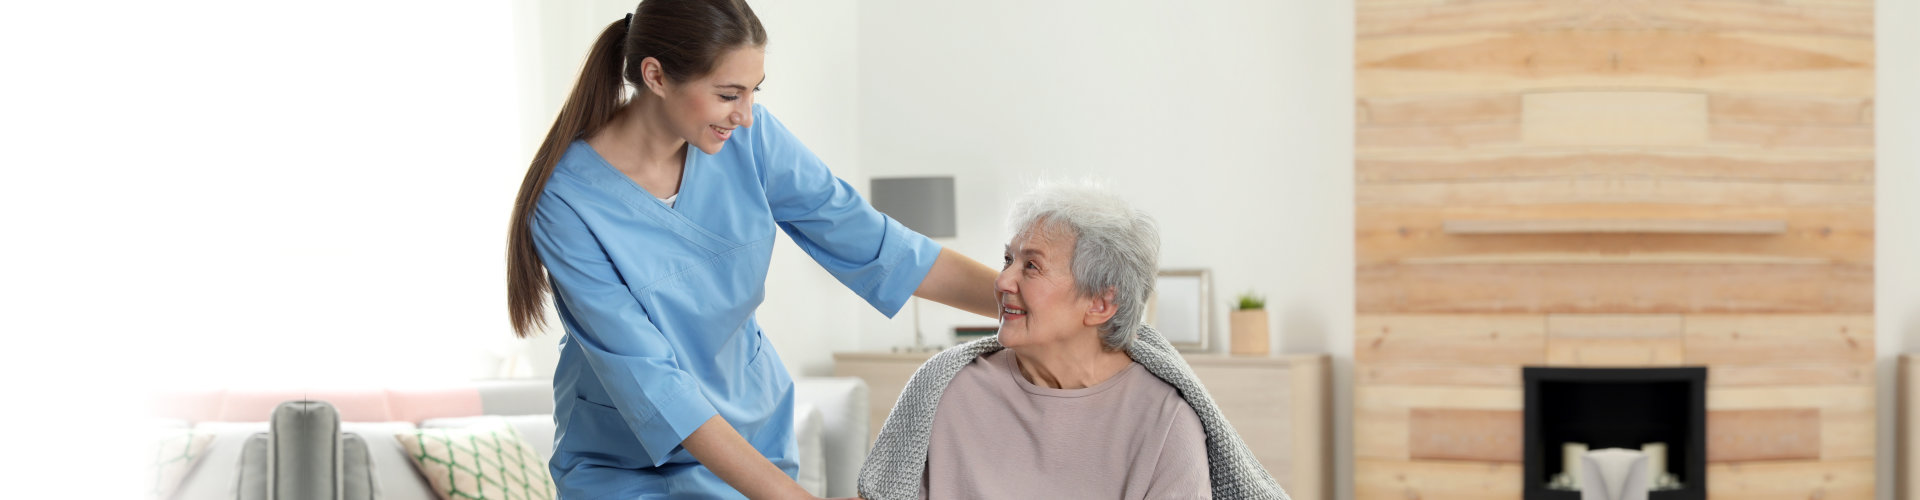 caregiver putting towel on senior woman's shoulder